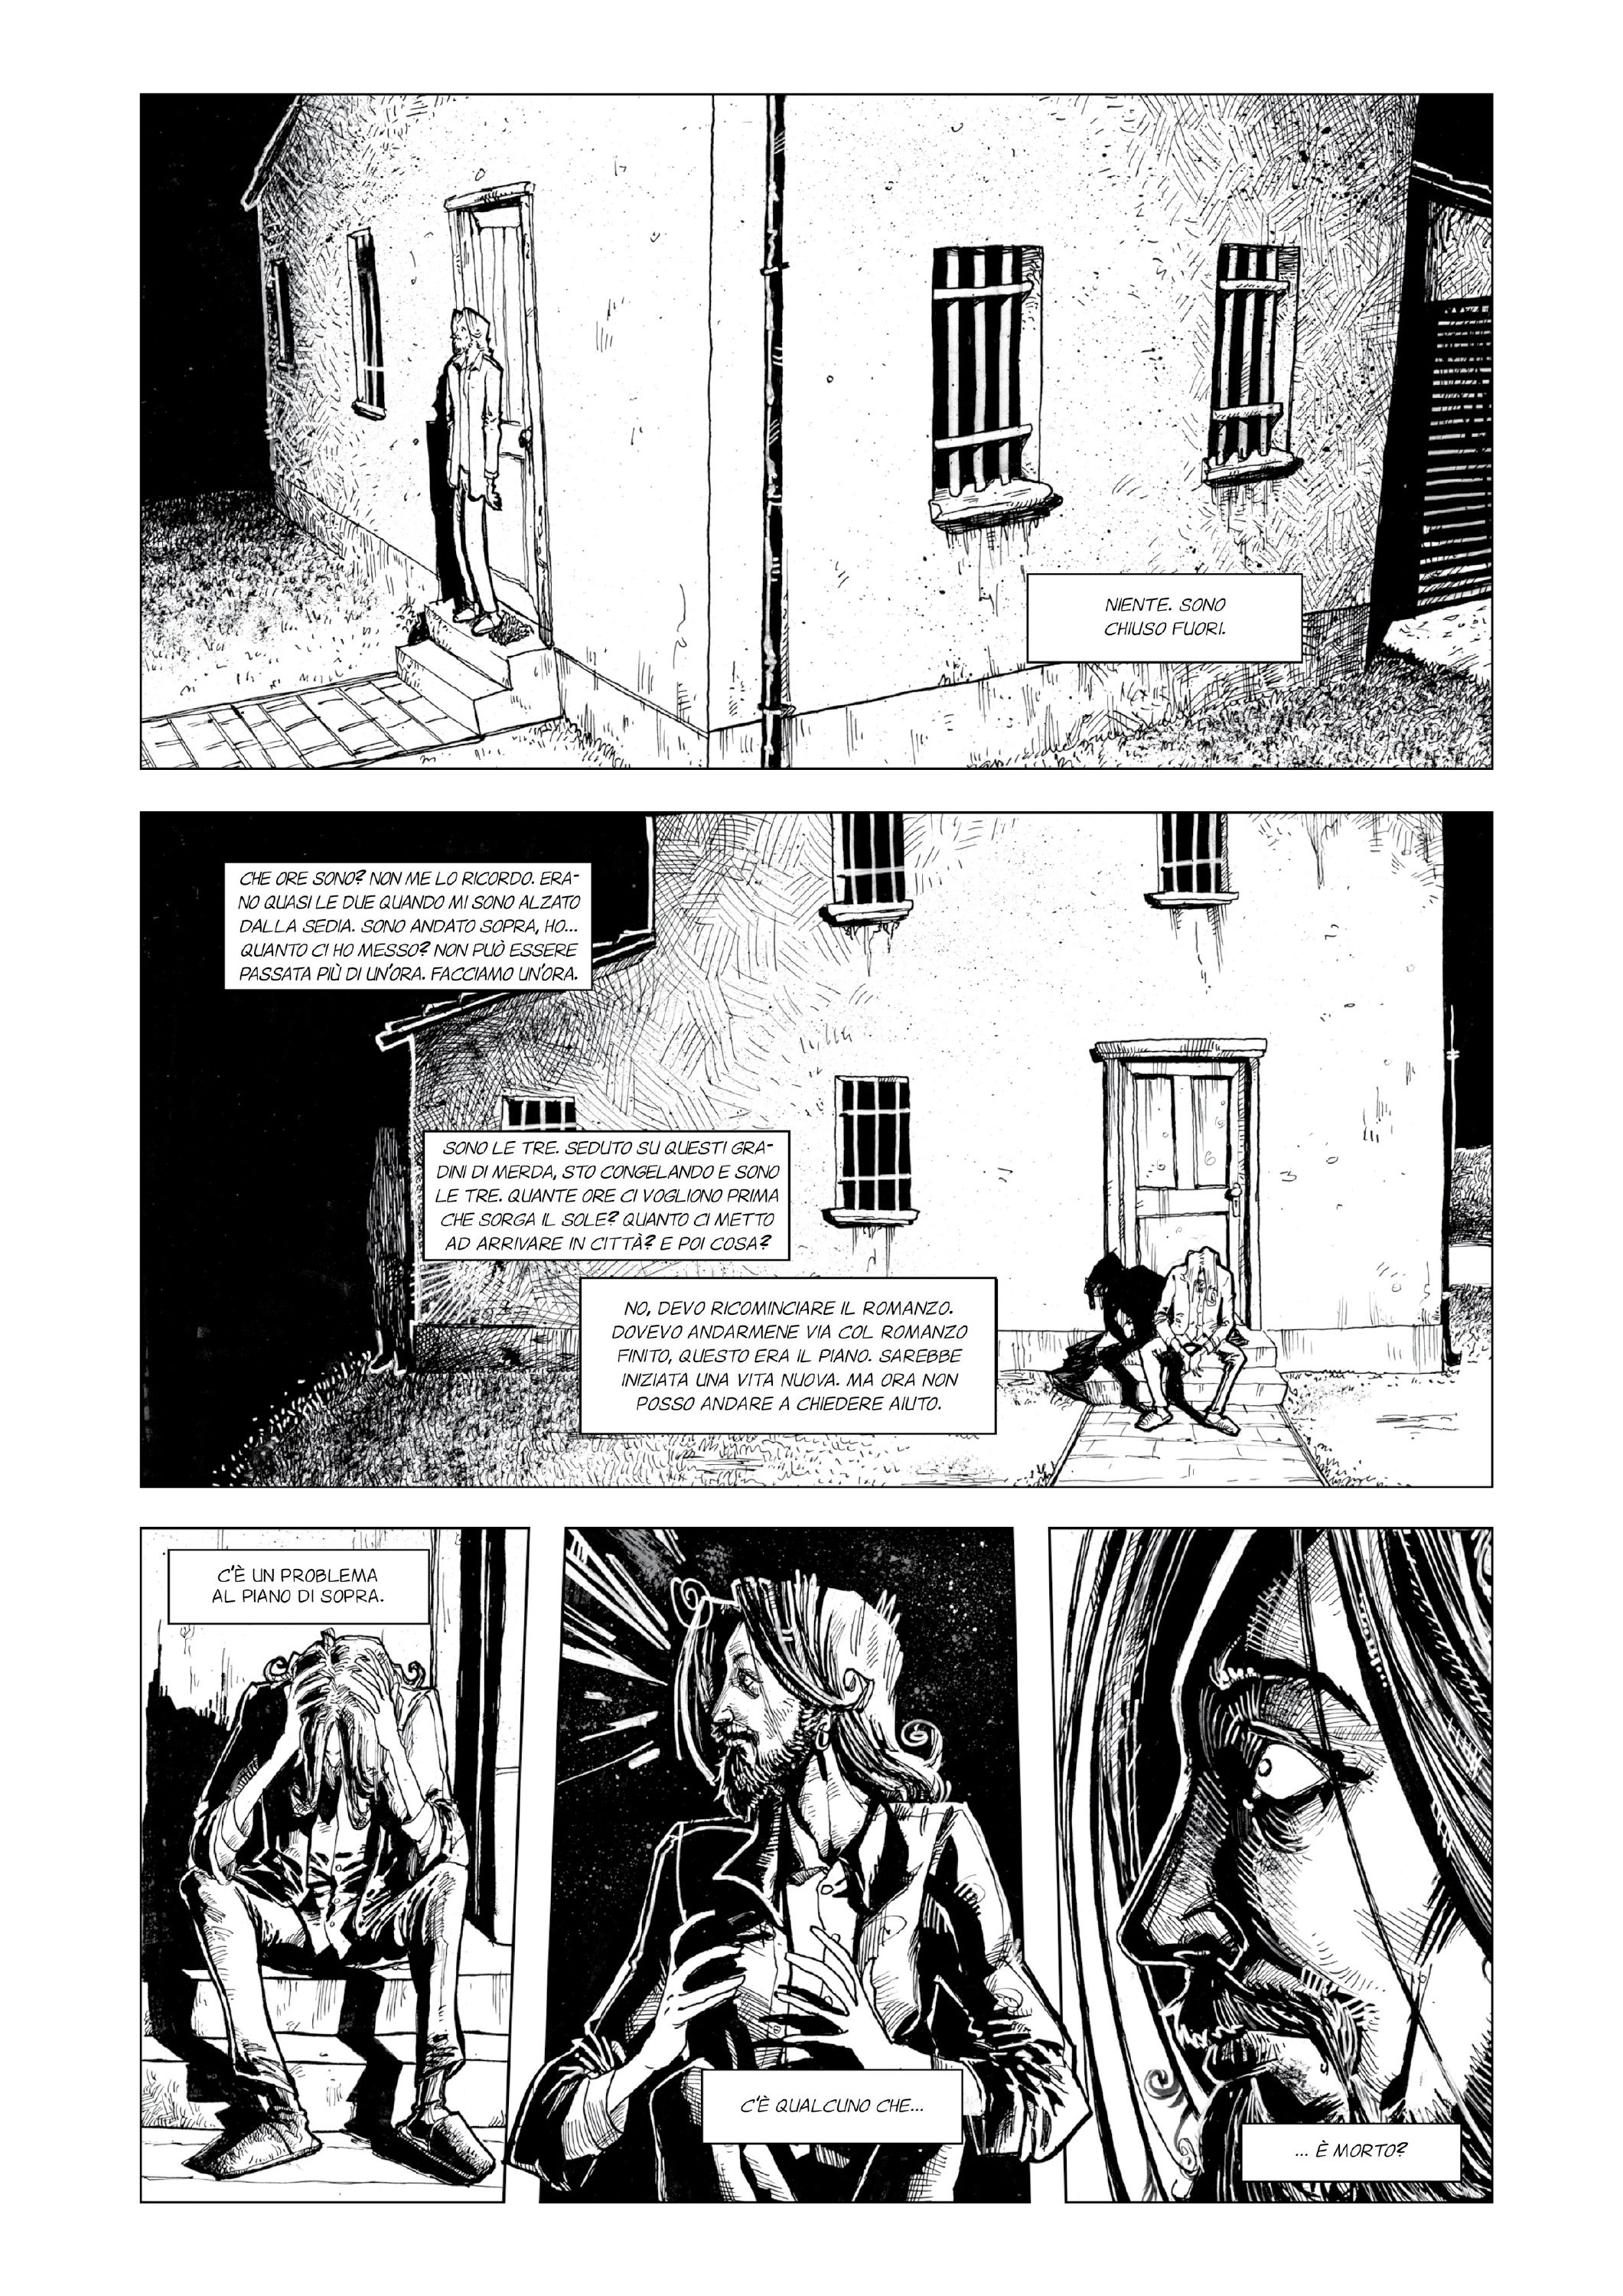 Recensione Fumetto: “La notte dello scrittore” di Marco Rincione e Elia Cavatton.